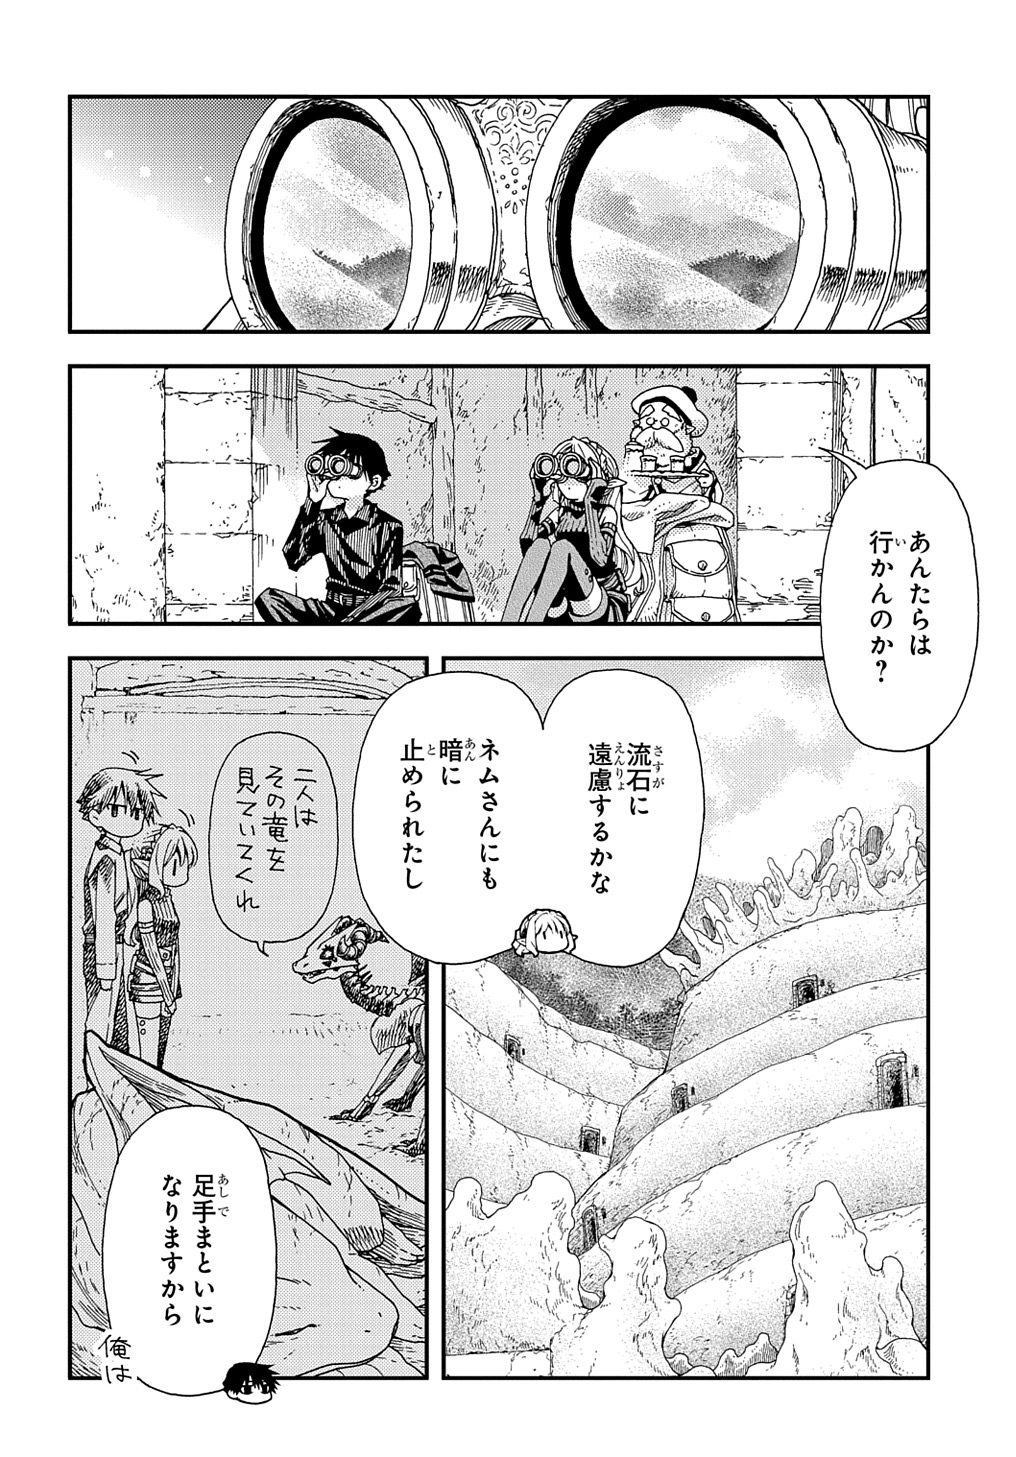 Hone Dragon no Mana Musume - Chapter 31 - Page 2